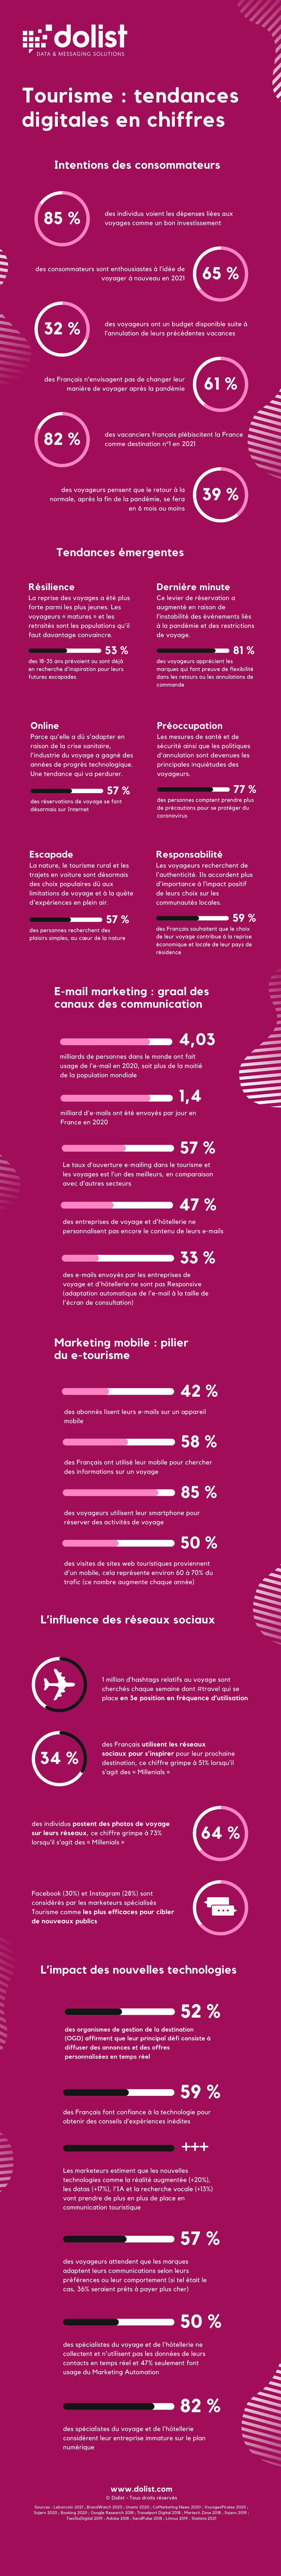 Infographie | Tourisme : tendances digitales en chiffres